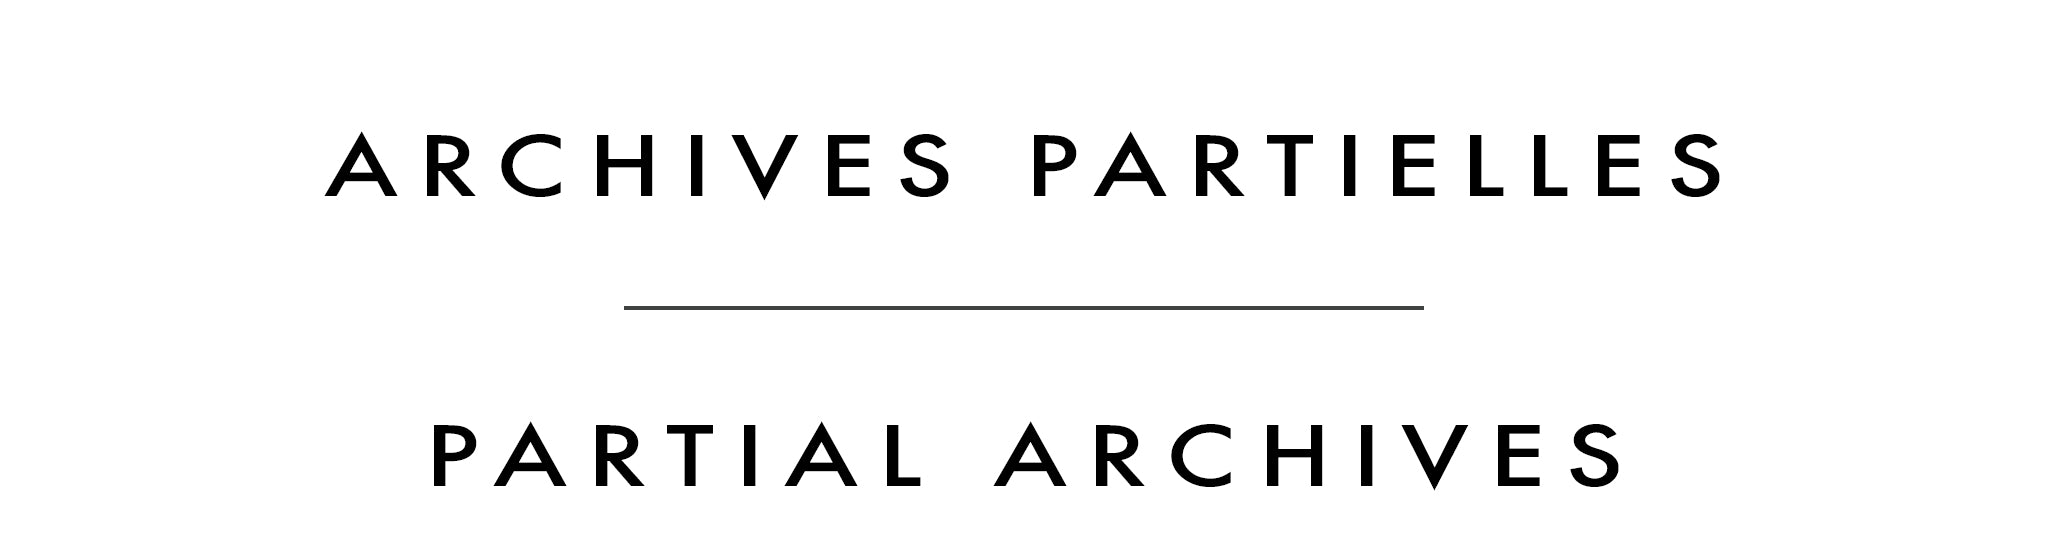 Archives partielles | Partial Archives | Alain Bédard